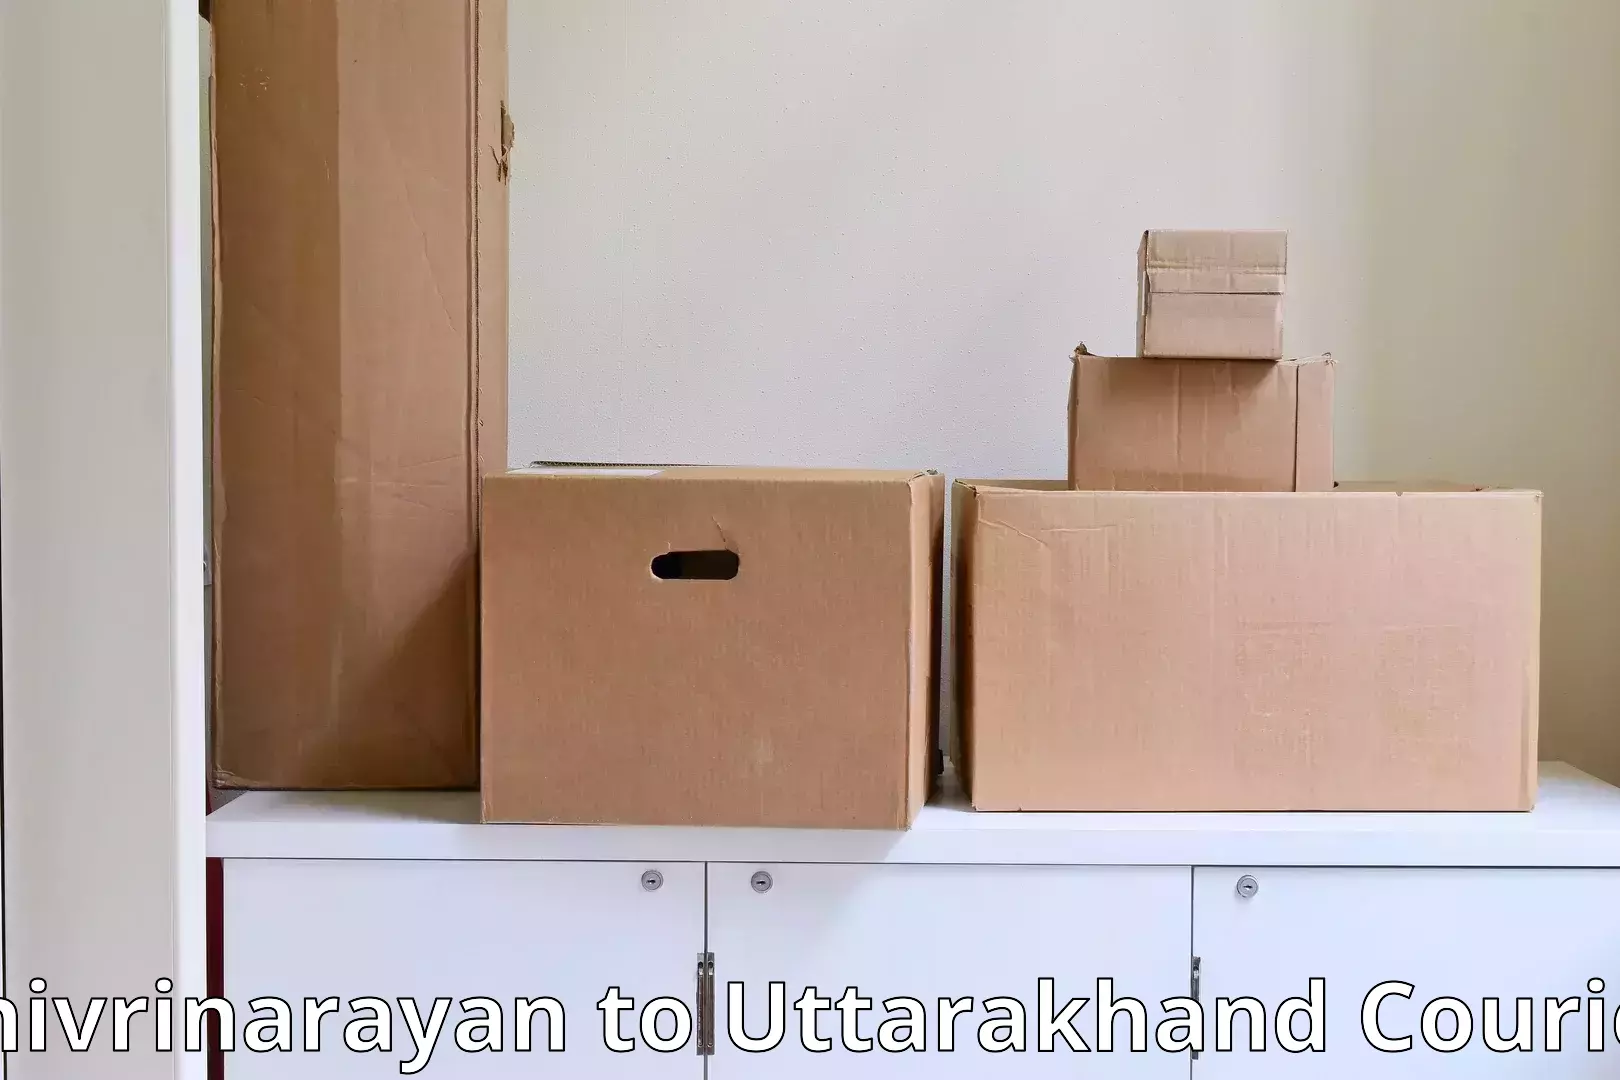 Personalized furniture moving Shivrinarayan to Nainital